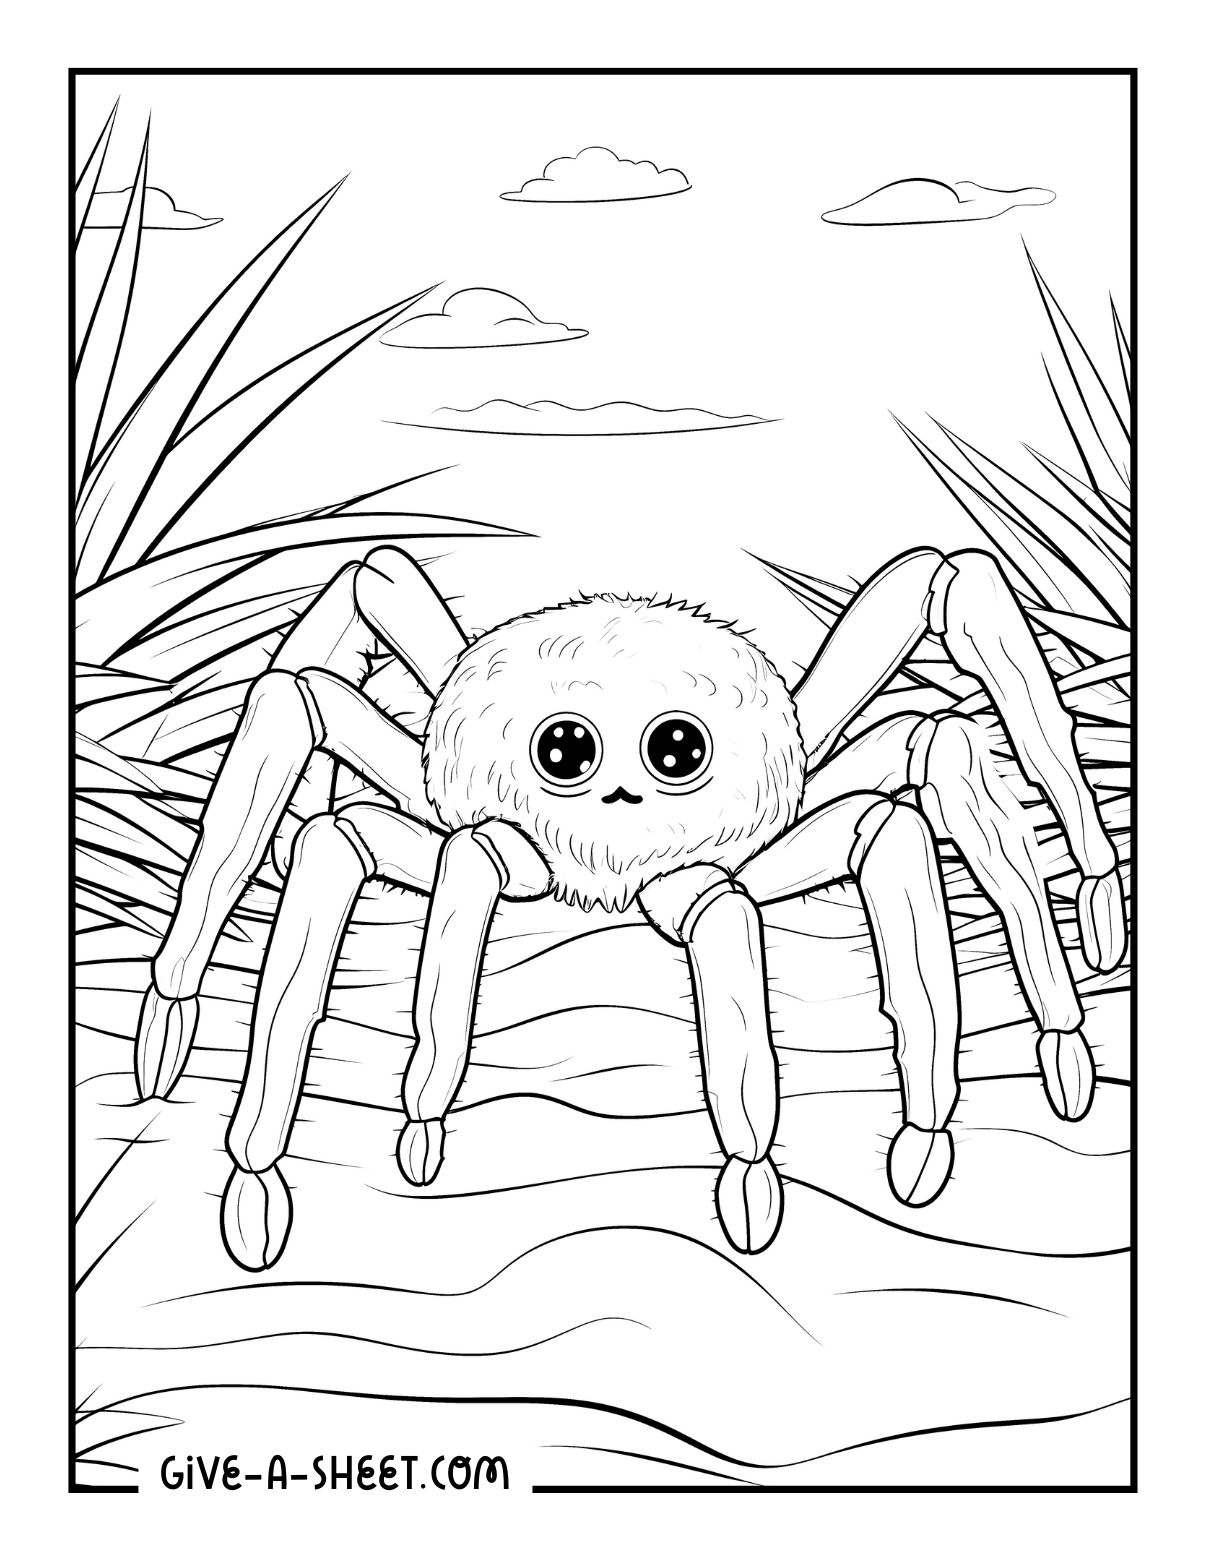 Tarantula in nature coloring book for kids.